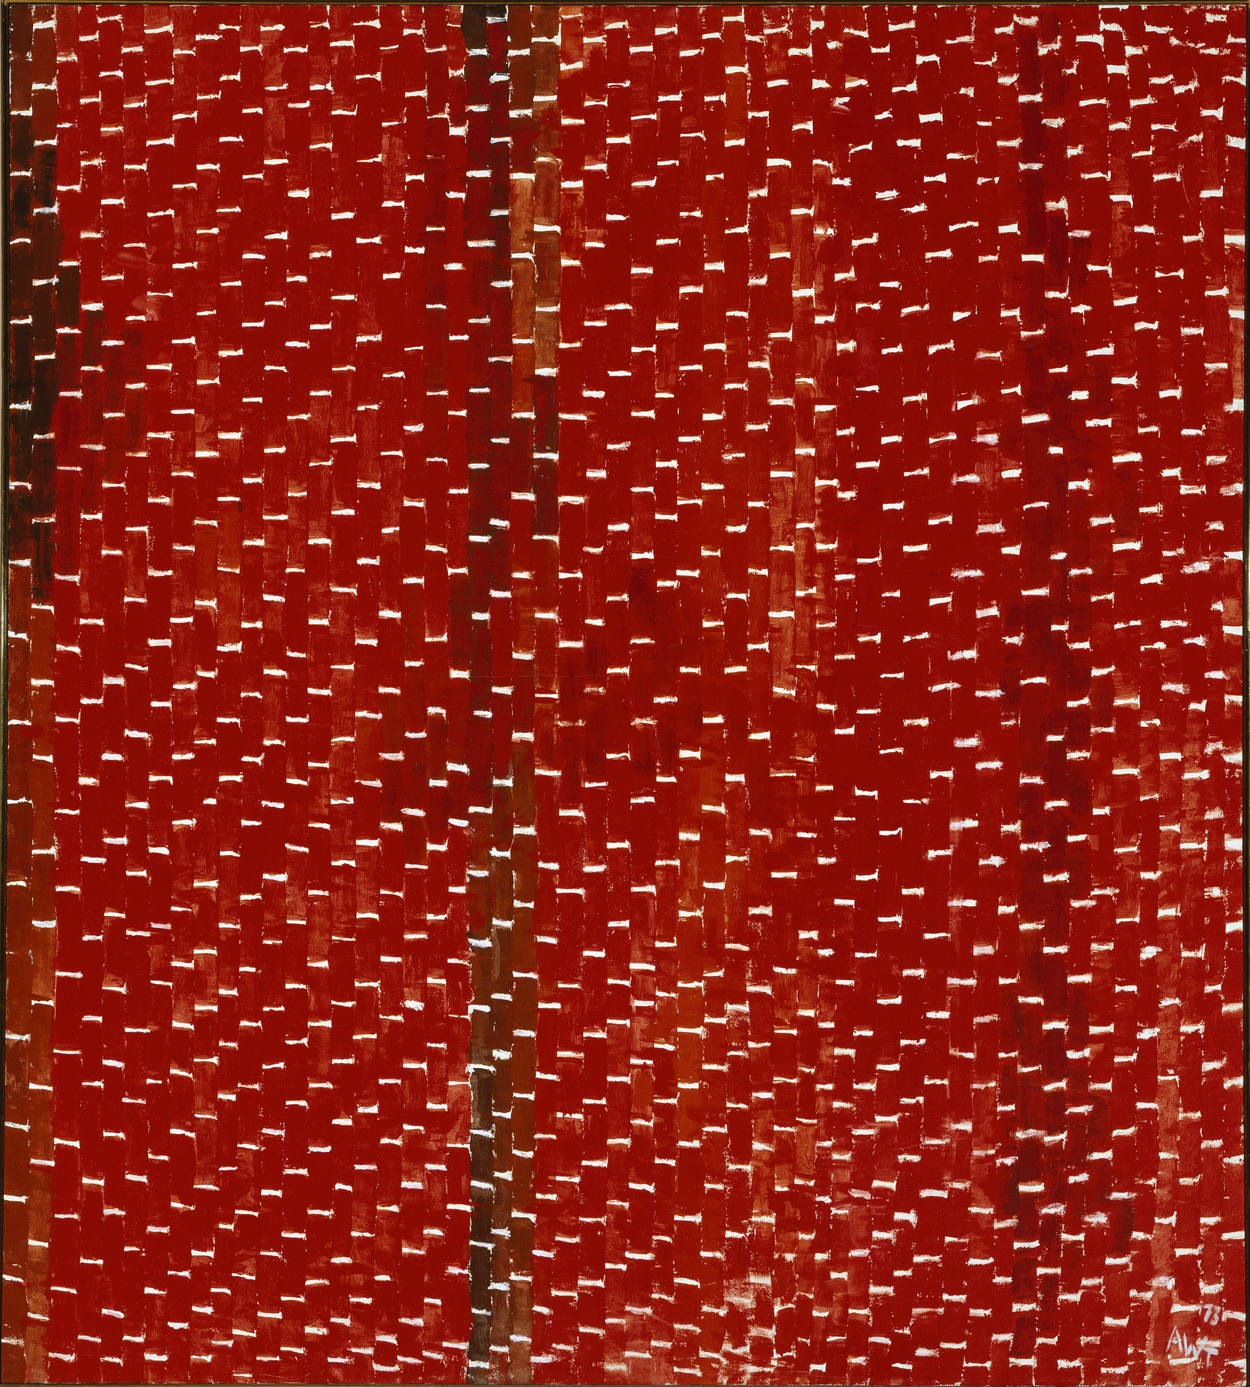 オリオン by Alma Woodsey Thomas - 1973年 - 59 3/4 x 54 インチ 